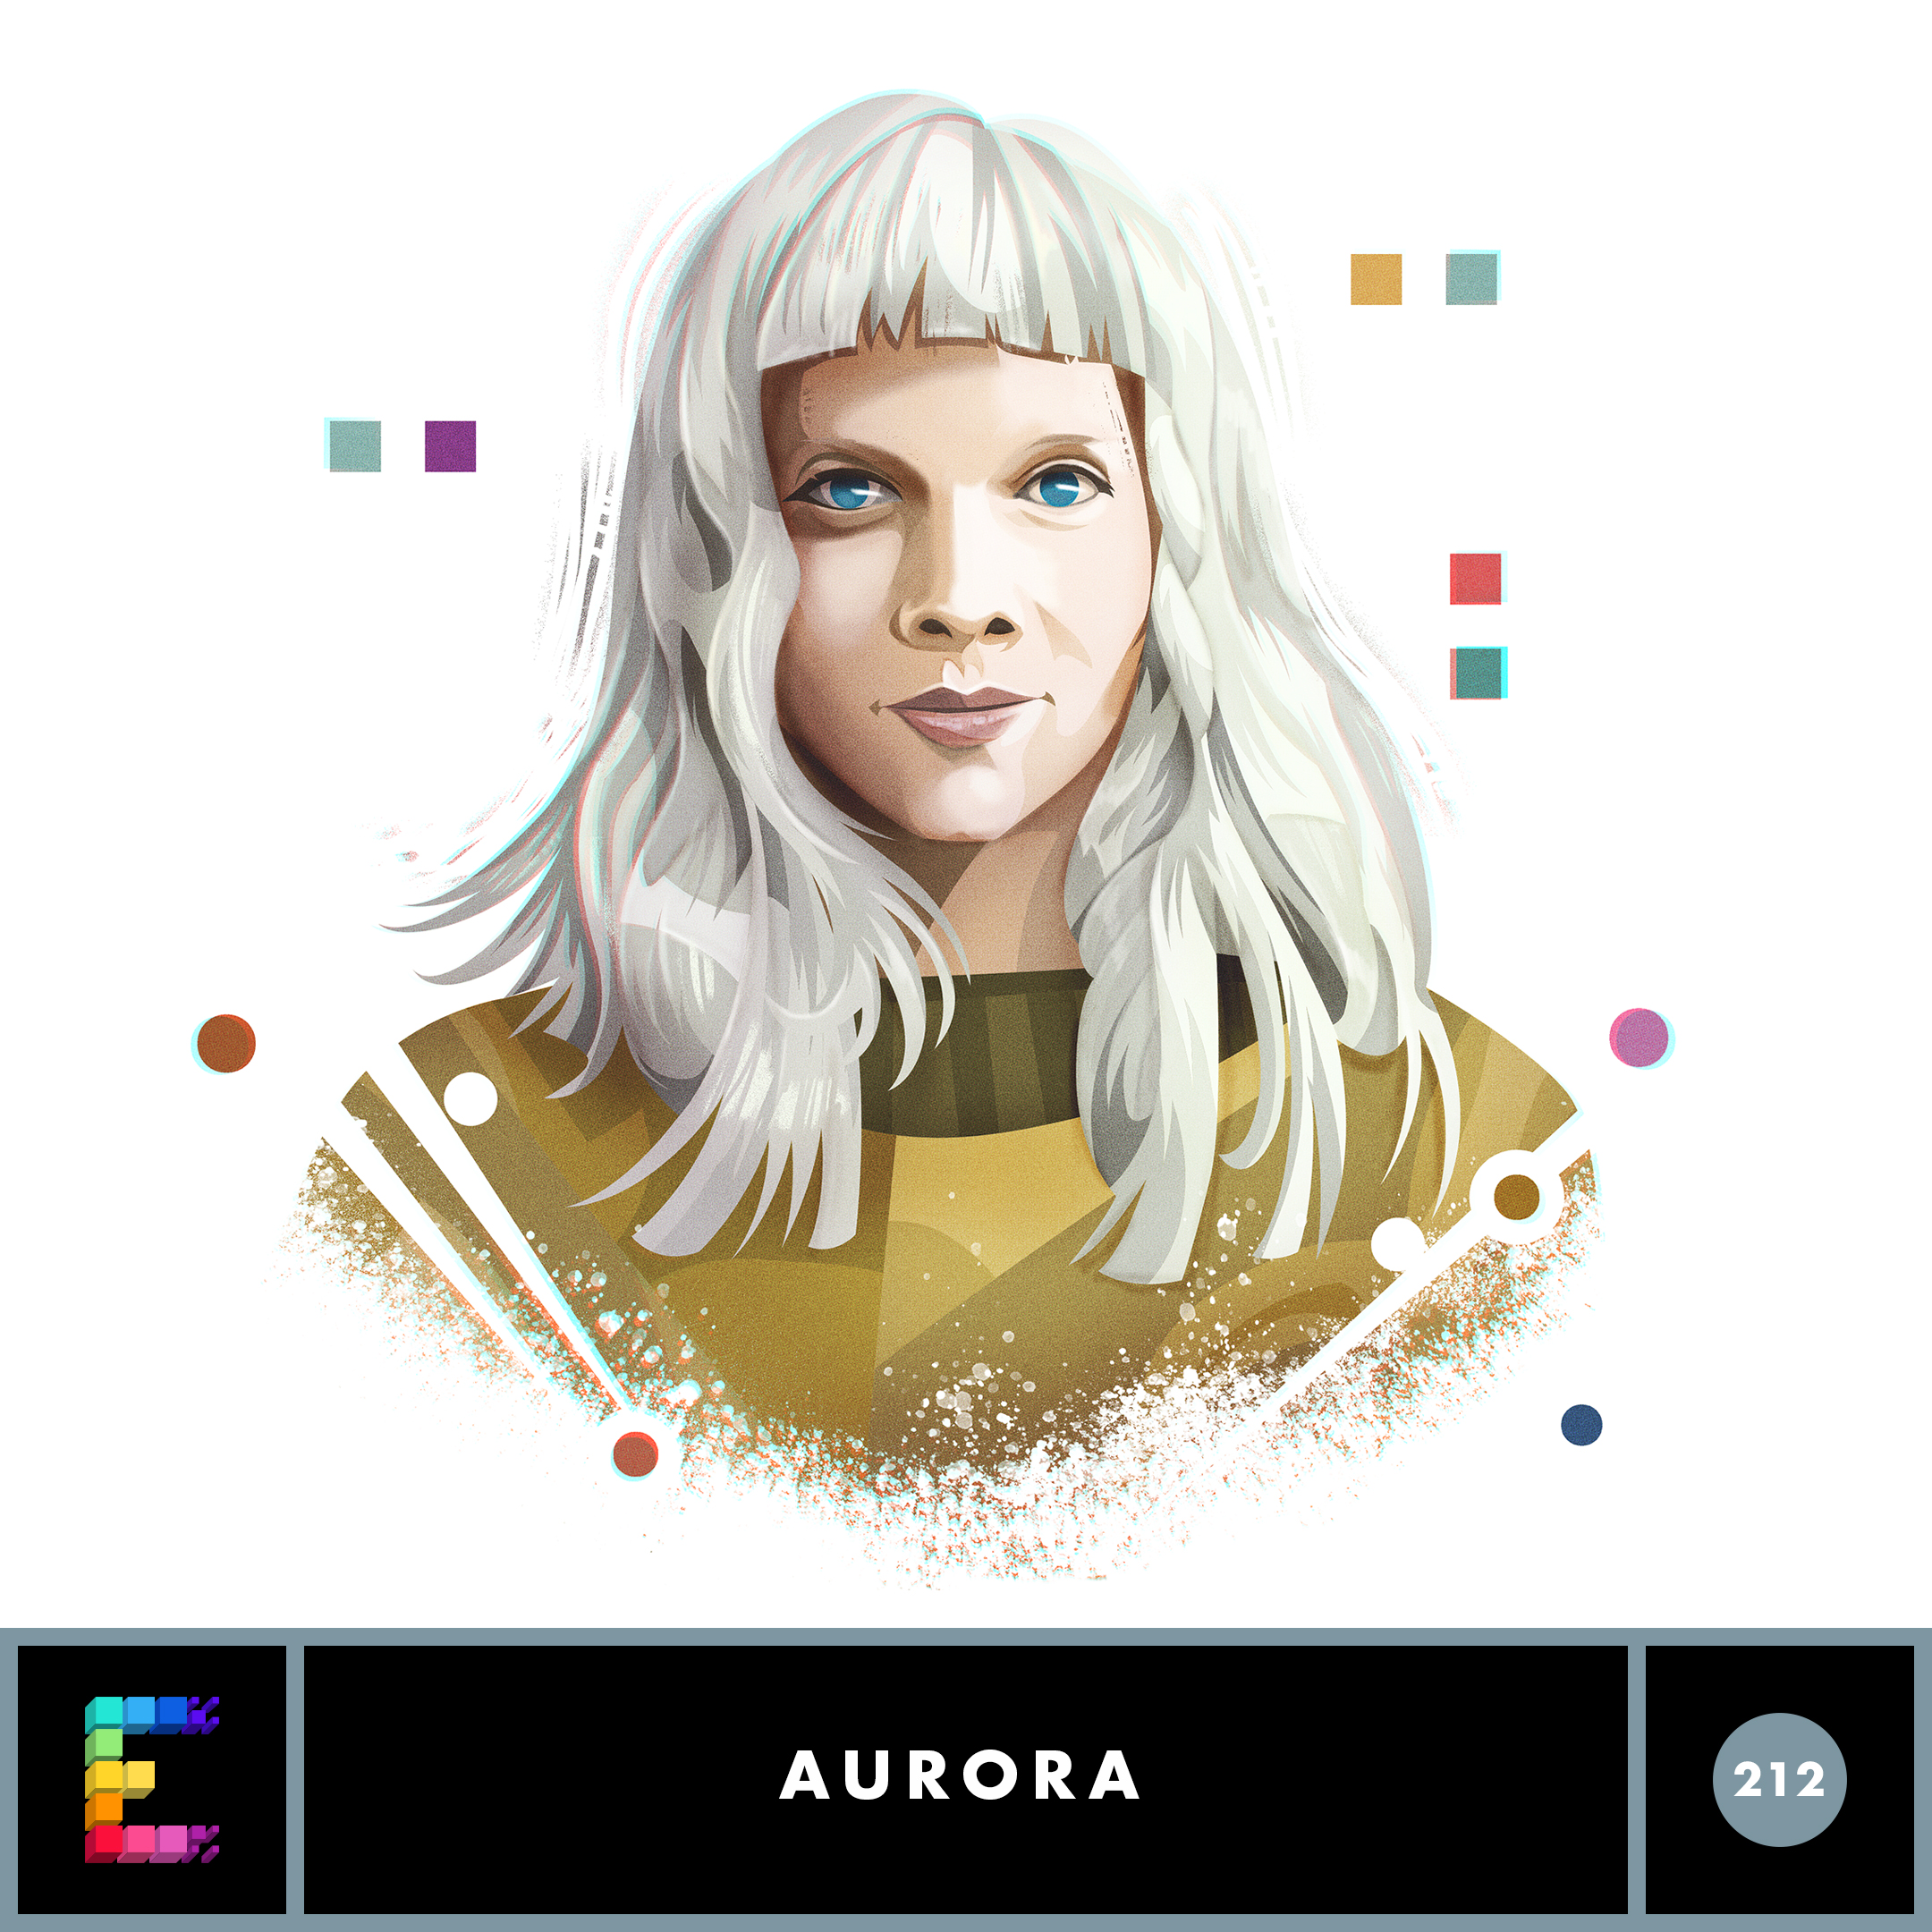 Episode 212: AURORA